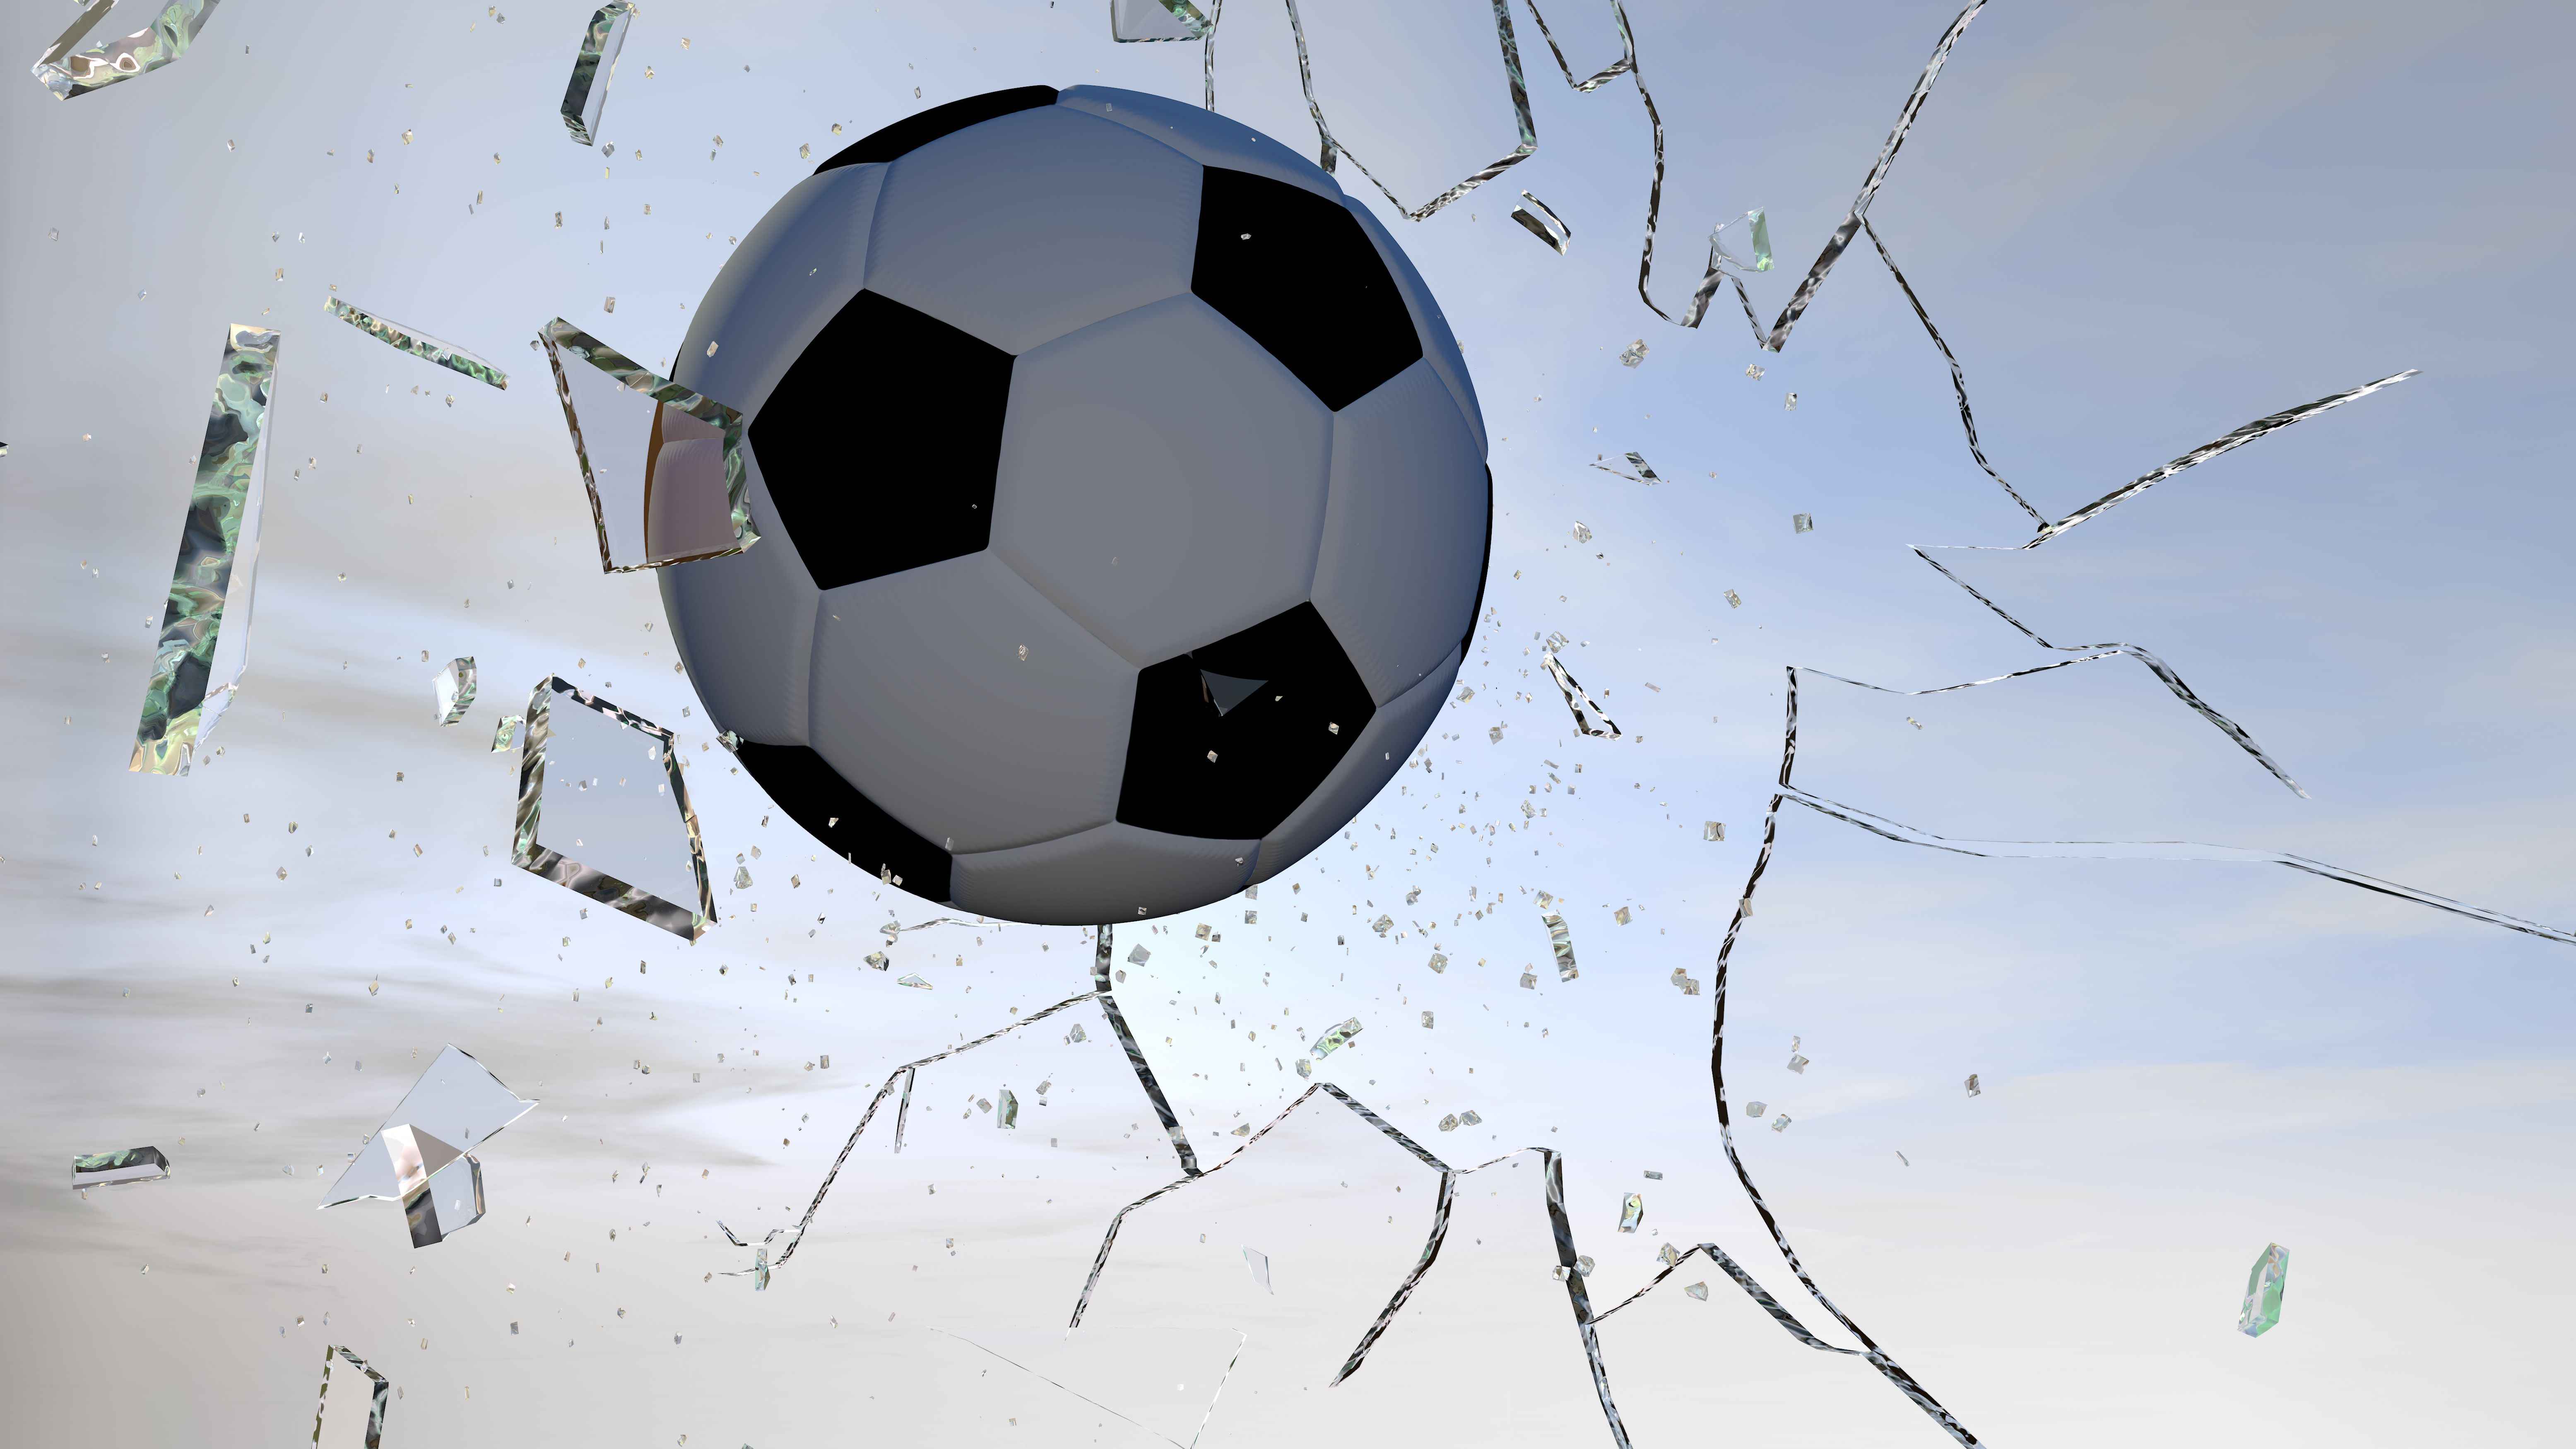 Fussball fliegt durch eine Glasfensterscheibe und zertrümmert diese.